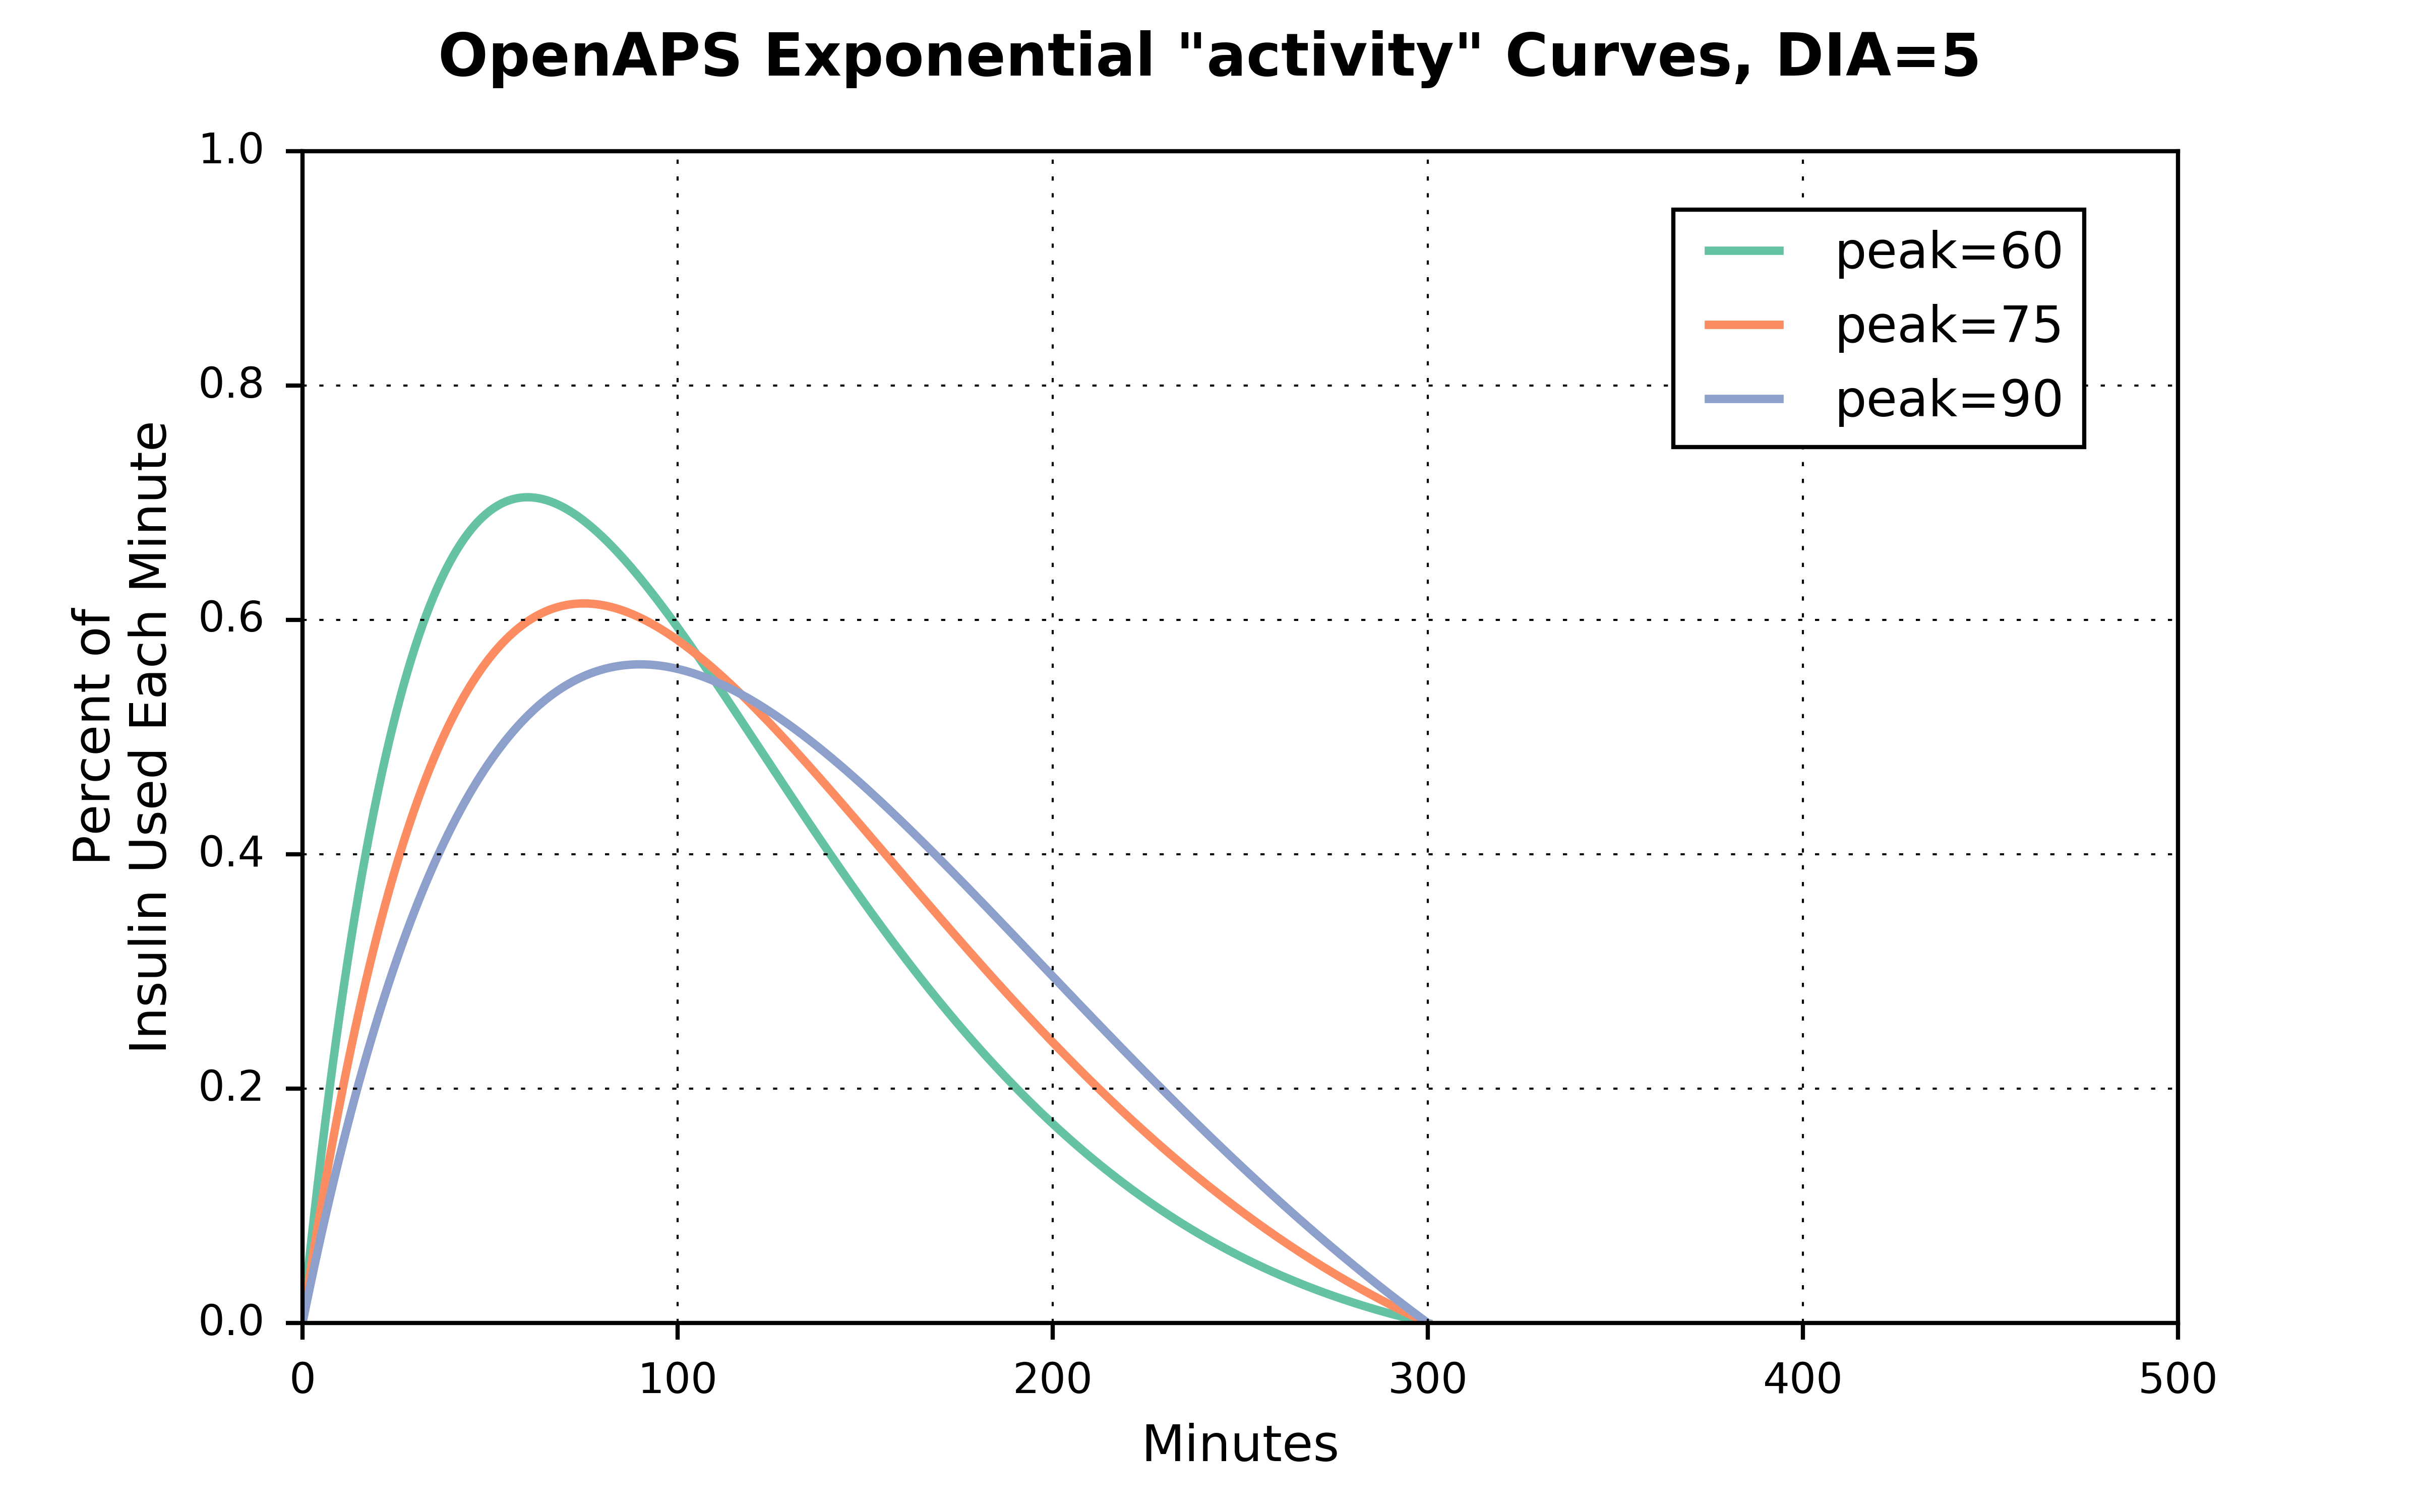 exponential_activity_curves_dia_5_peak_60_75_90